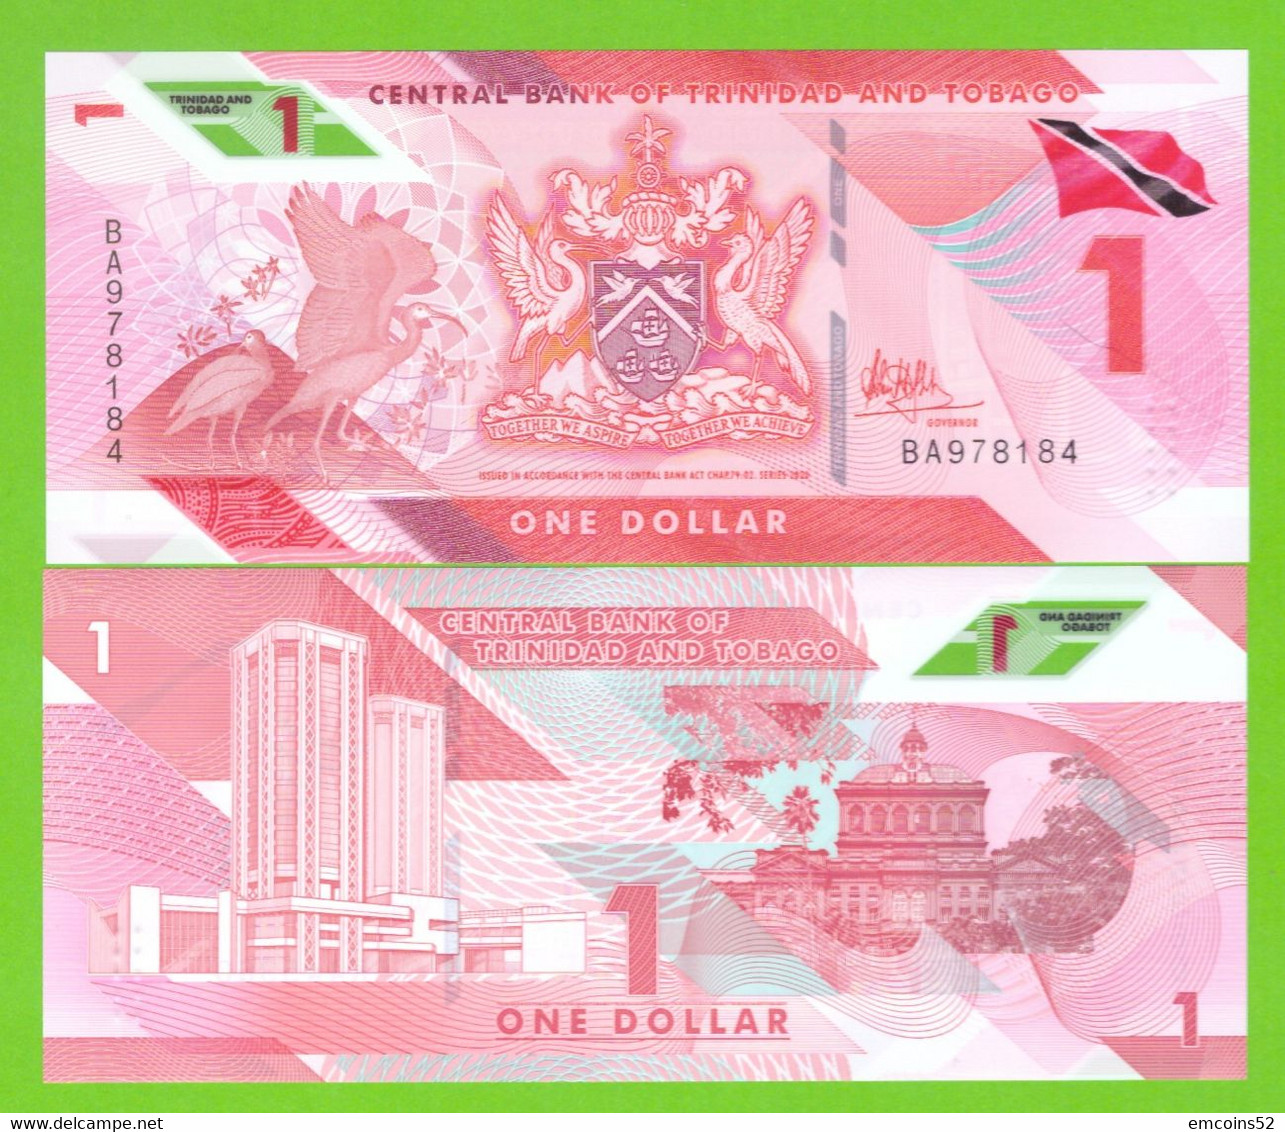 TRINIDAD & TOBAGO 1 DOLLAR 2020  P-W60  UNC - Trindad & Tobago